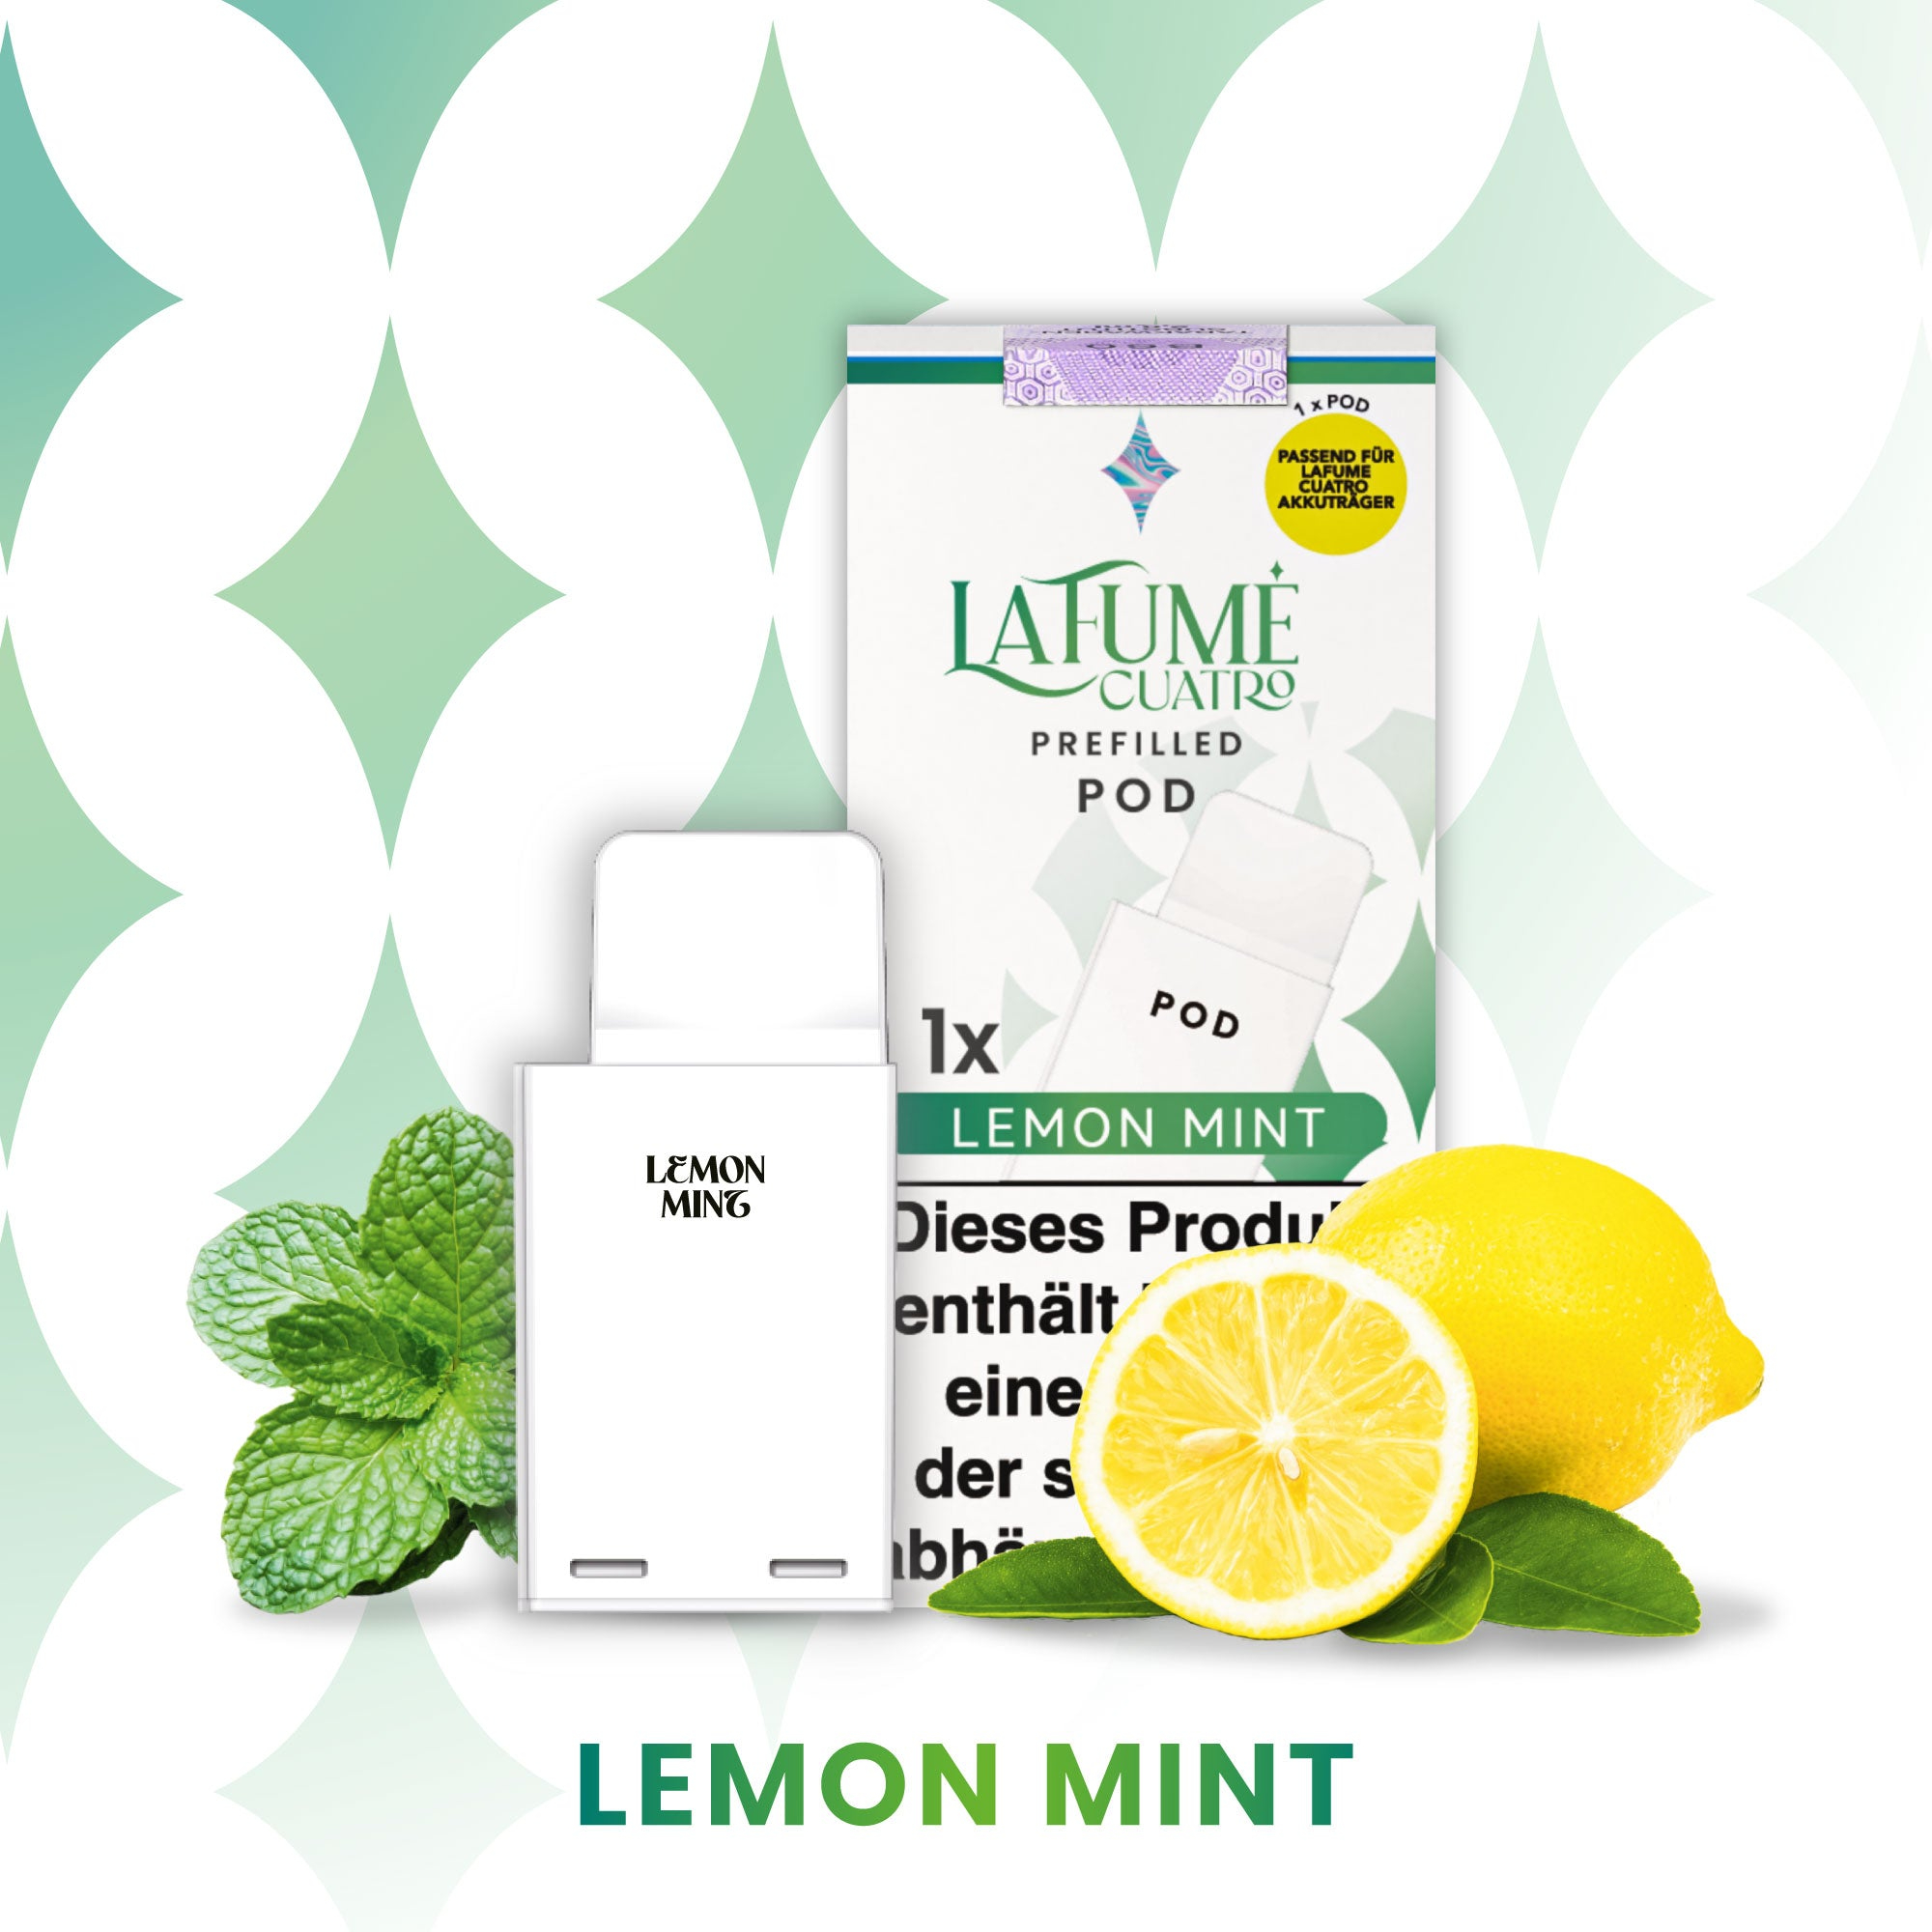 La Fume Cuatro - Pod - Lemon Mint 2% Nikotin